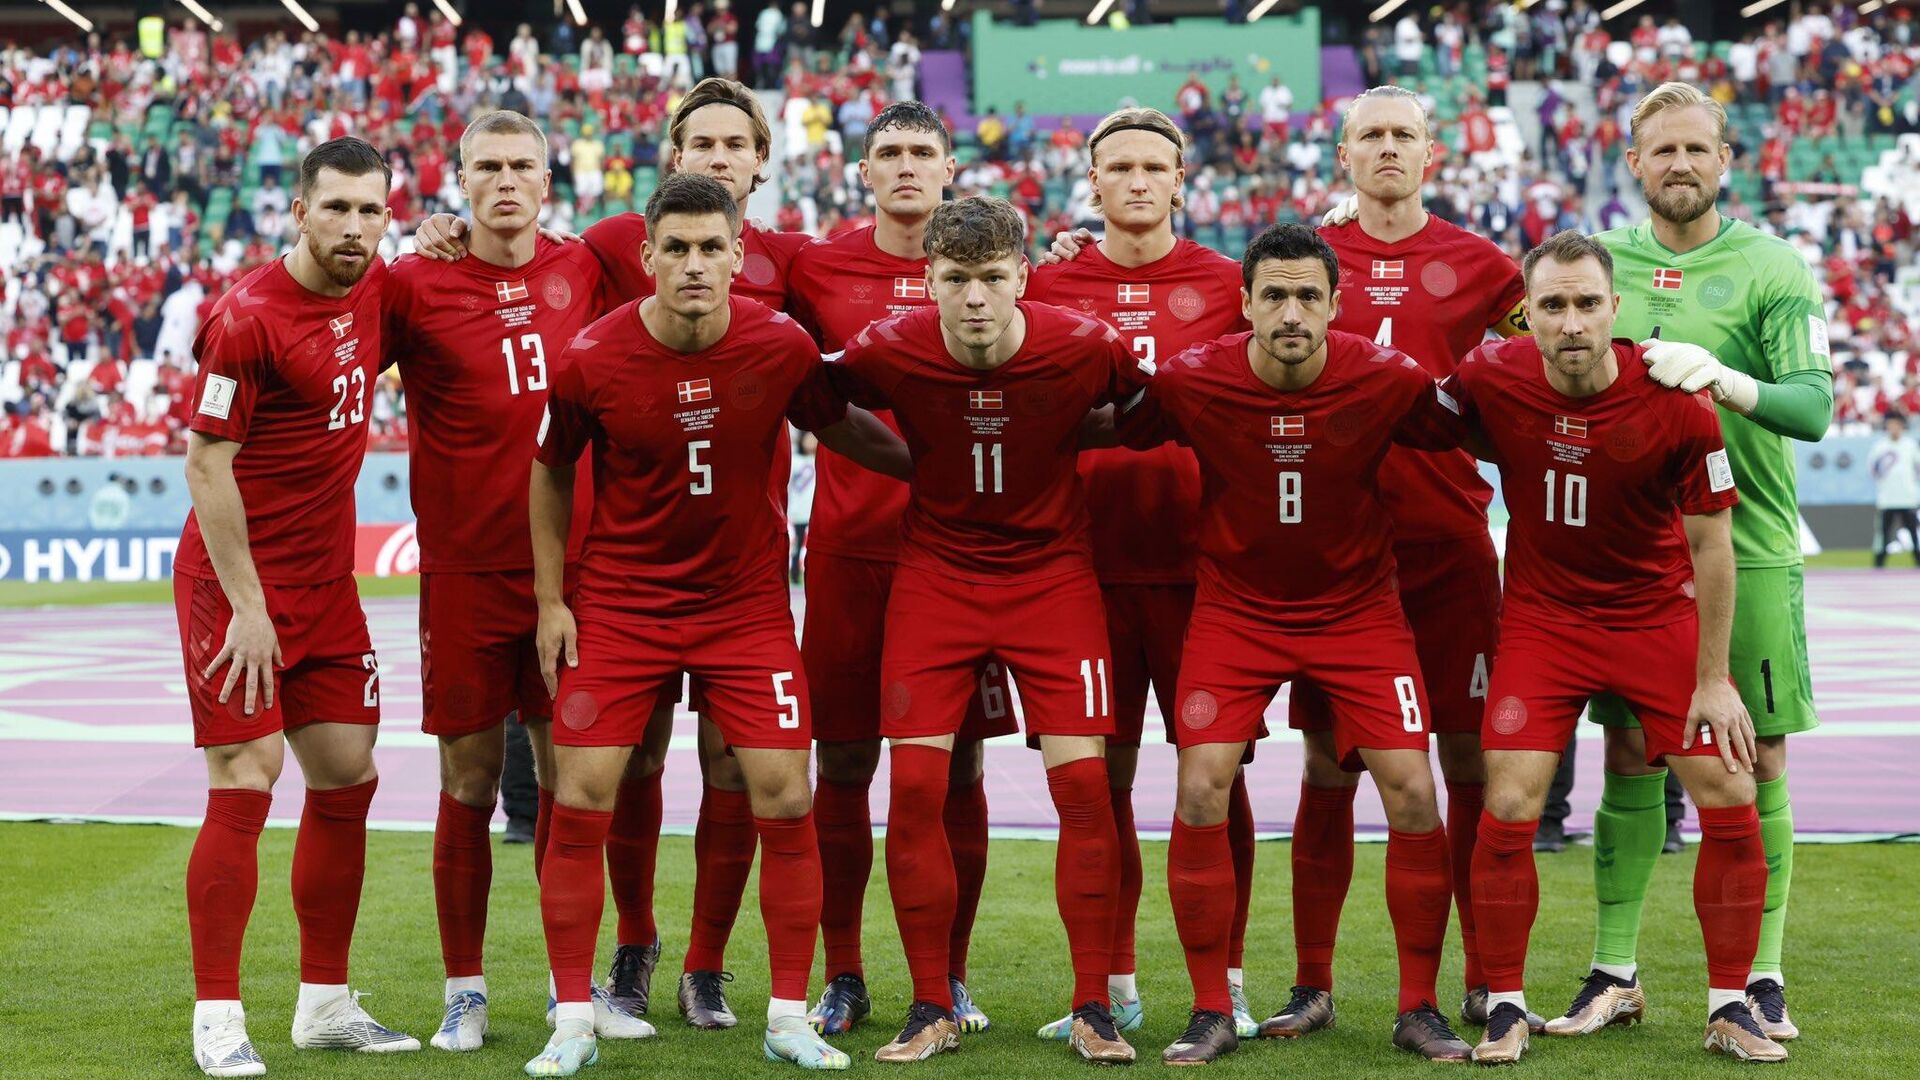 сборная дании по футболу 2021 состав на евро